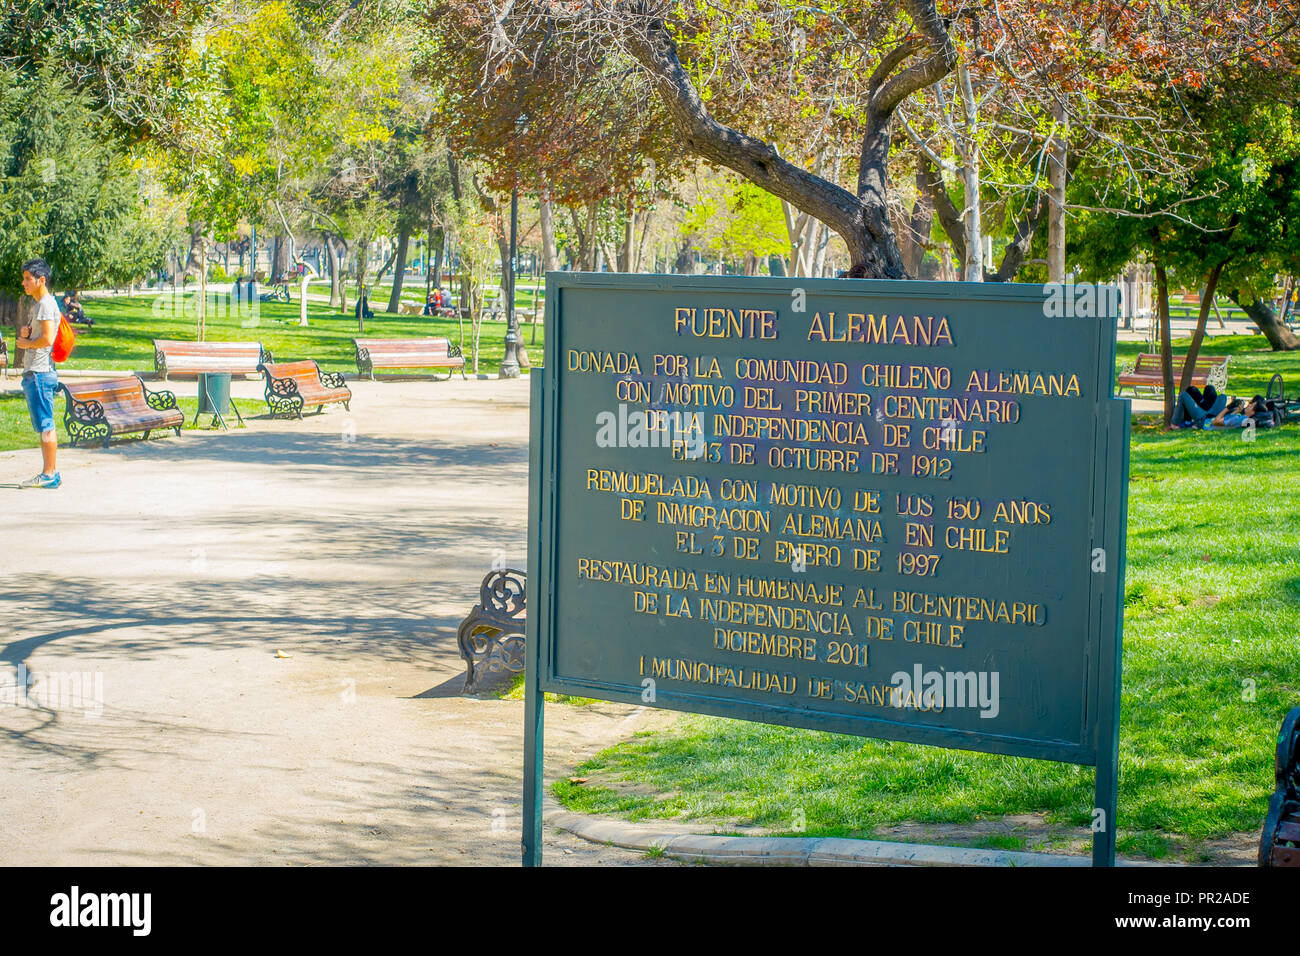 SANTIAGO, CHILI - 13 septembre 2018 : vue extérieure de l'information signe de description de fontaine allemande dans une structure métallique dans le parc Forestal situé à Santiago, capitale du Chili Banque D'Images